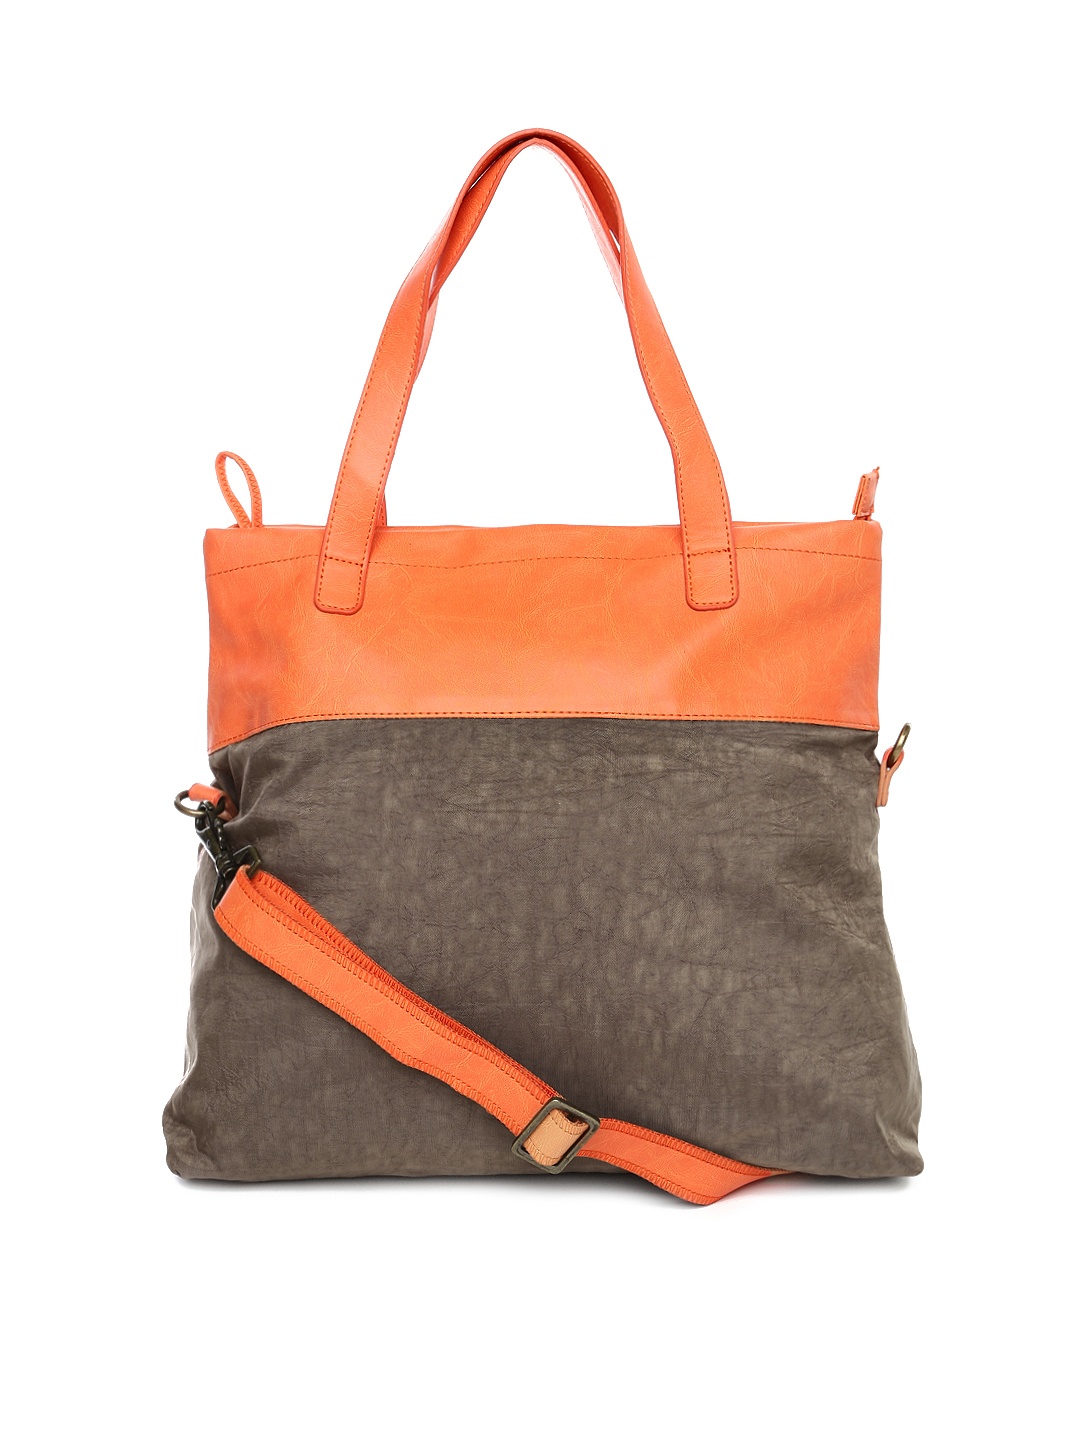 Myntra Baggit Brown & Orange Shoulder Bag 700250 | Buy Myntra Baggit Handbags at best price ...